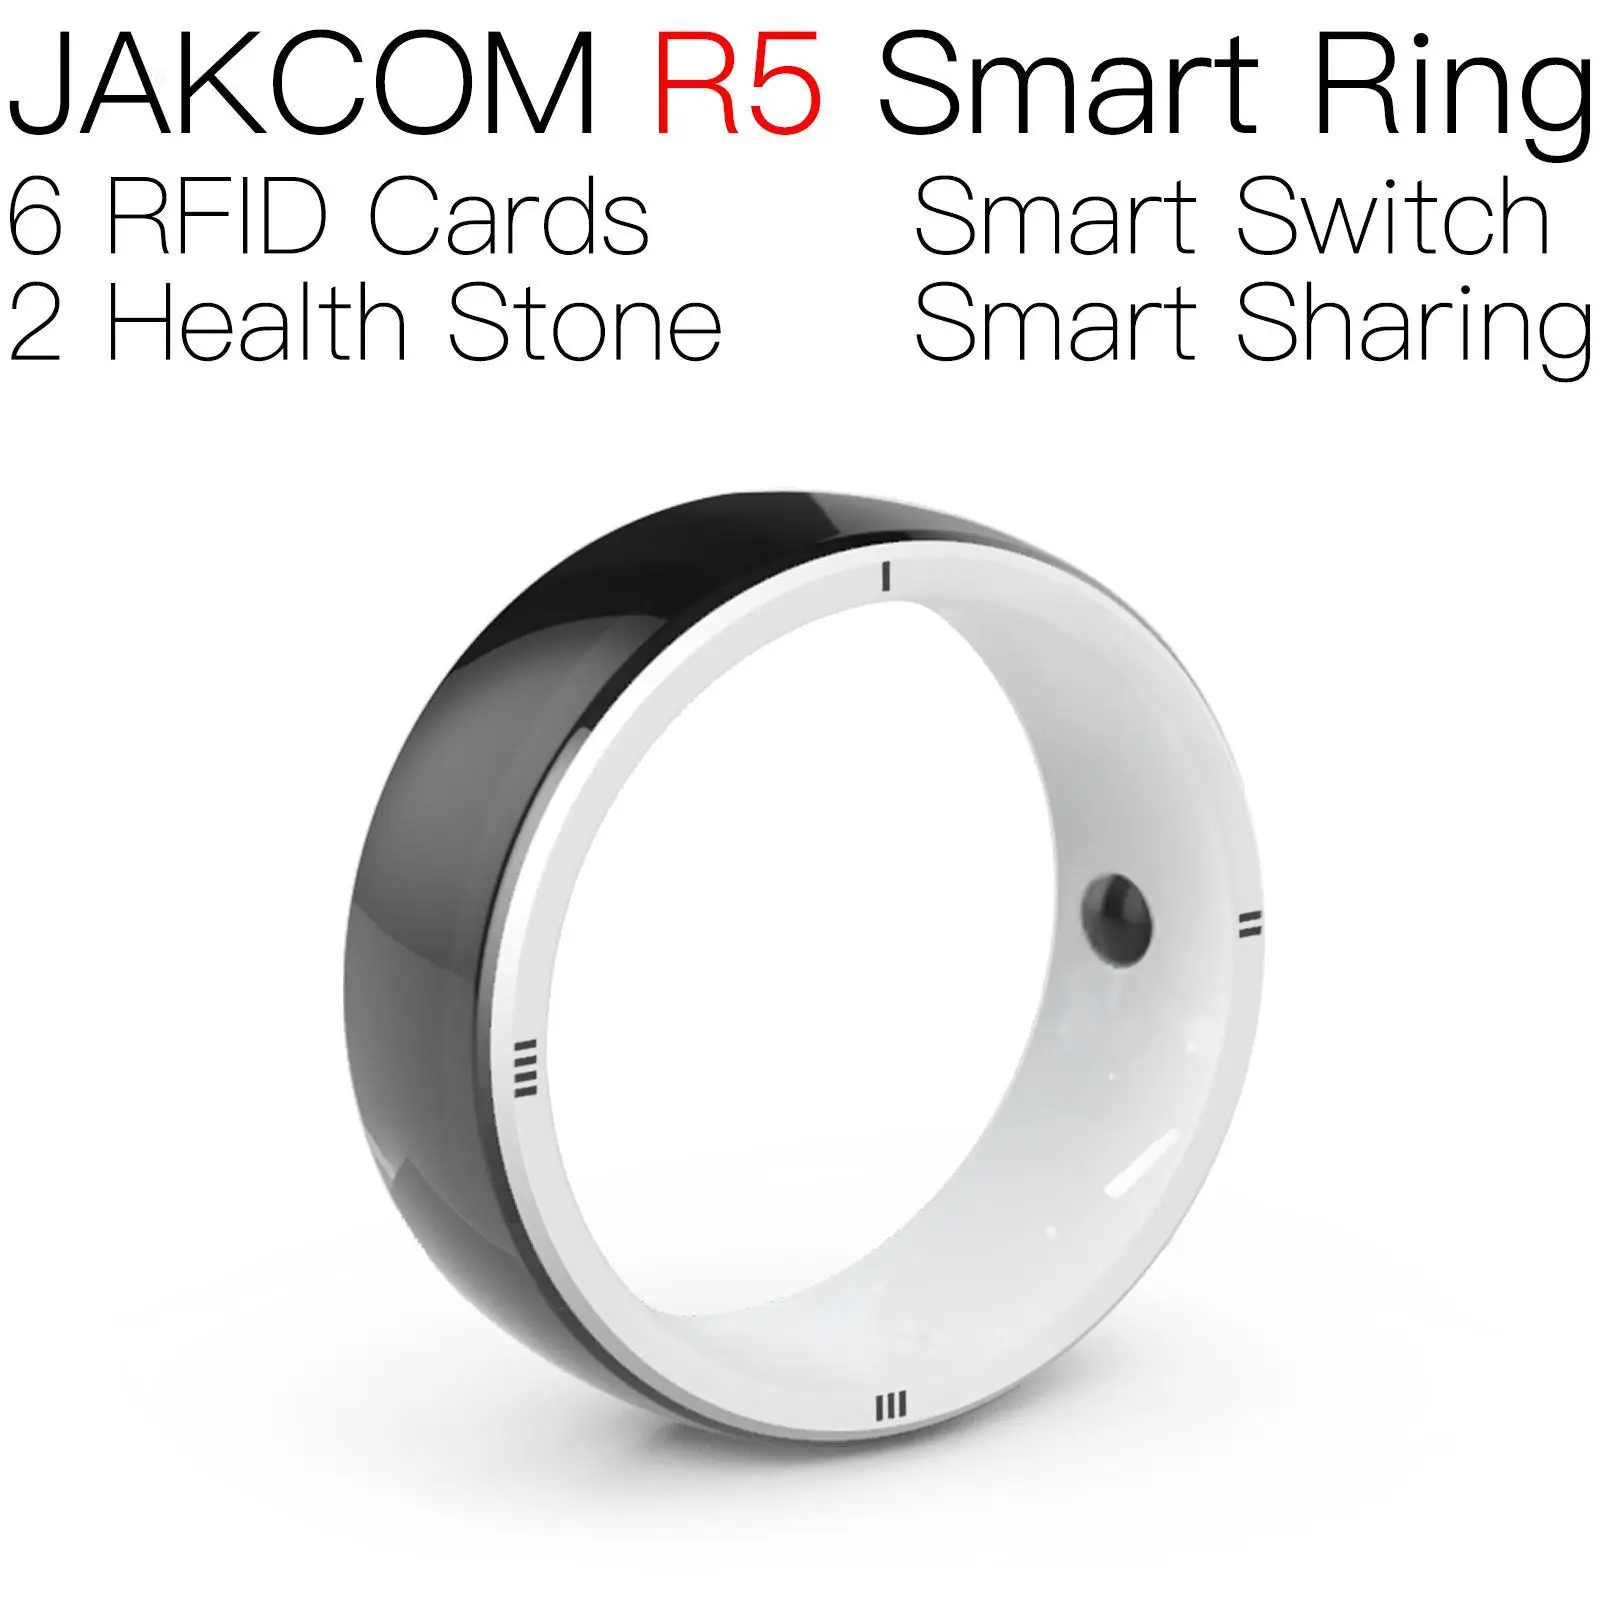 

Смарт-кольцо JAKCOM R5, новее, чем rfid, водонепроницаемая наклейка, microchips d213, карта УВЧ t5577, перезаписываемая, 125 кГц